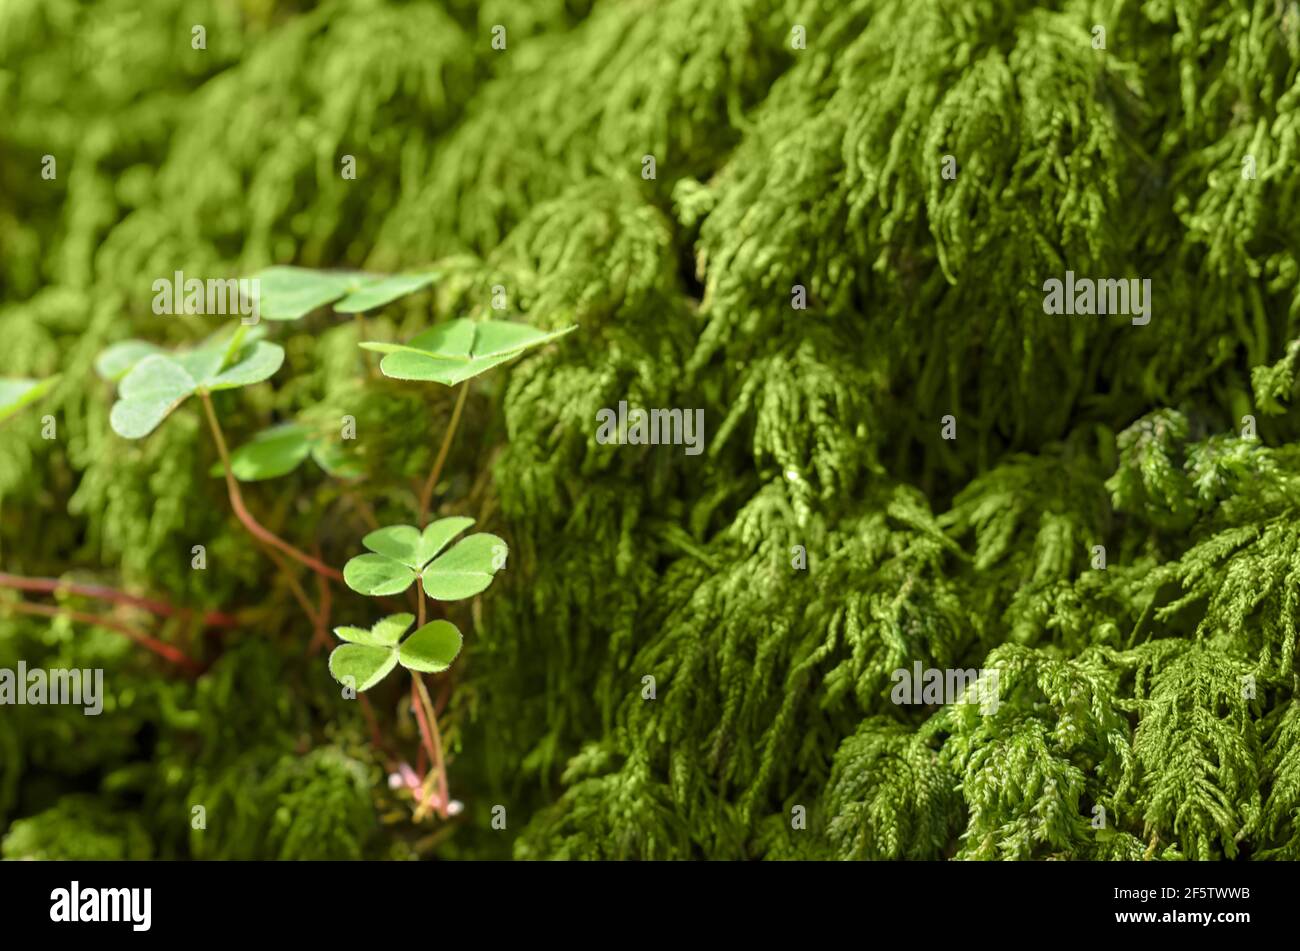 Legno comune e muschio verde su un pavimento forestale, in una giornata estiva soleggiata. Oxalis acetosella, a volte riferito a uno shamrock. Foto Stock